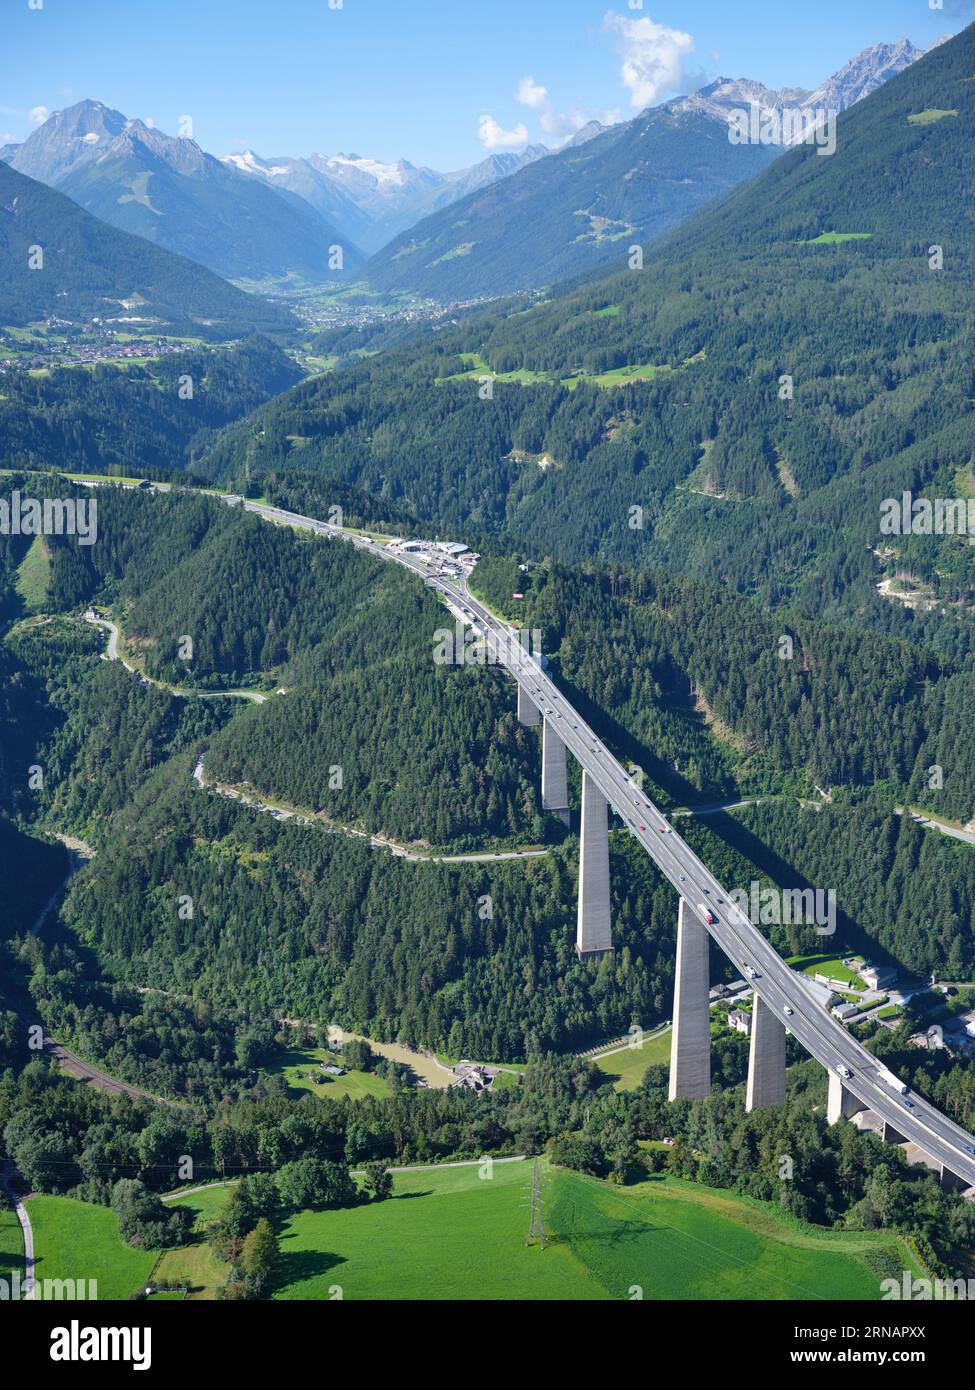 LUFTAUFNAHME. Die Autobahn A13 Brenner an der Europabrücke mit dem malerischen Stubaital. Schönberg im Stubaital, Tirol, Österreich. Stockfoto